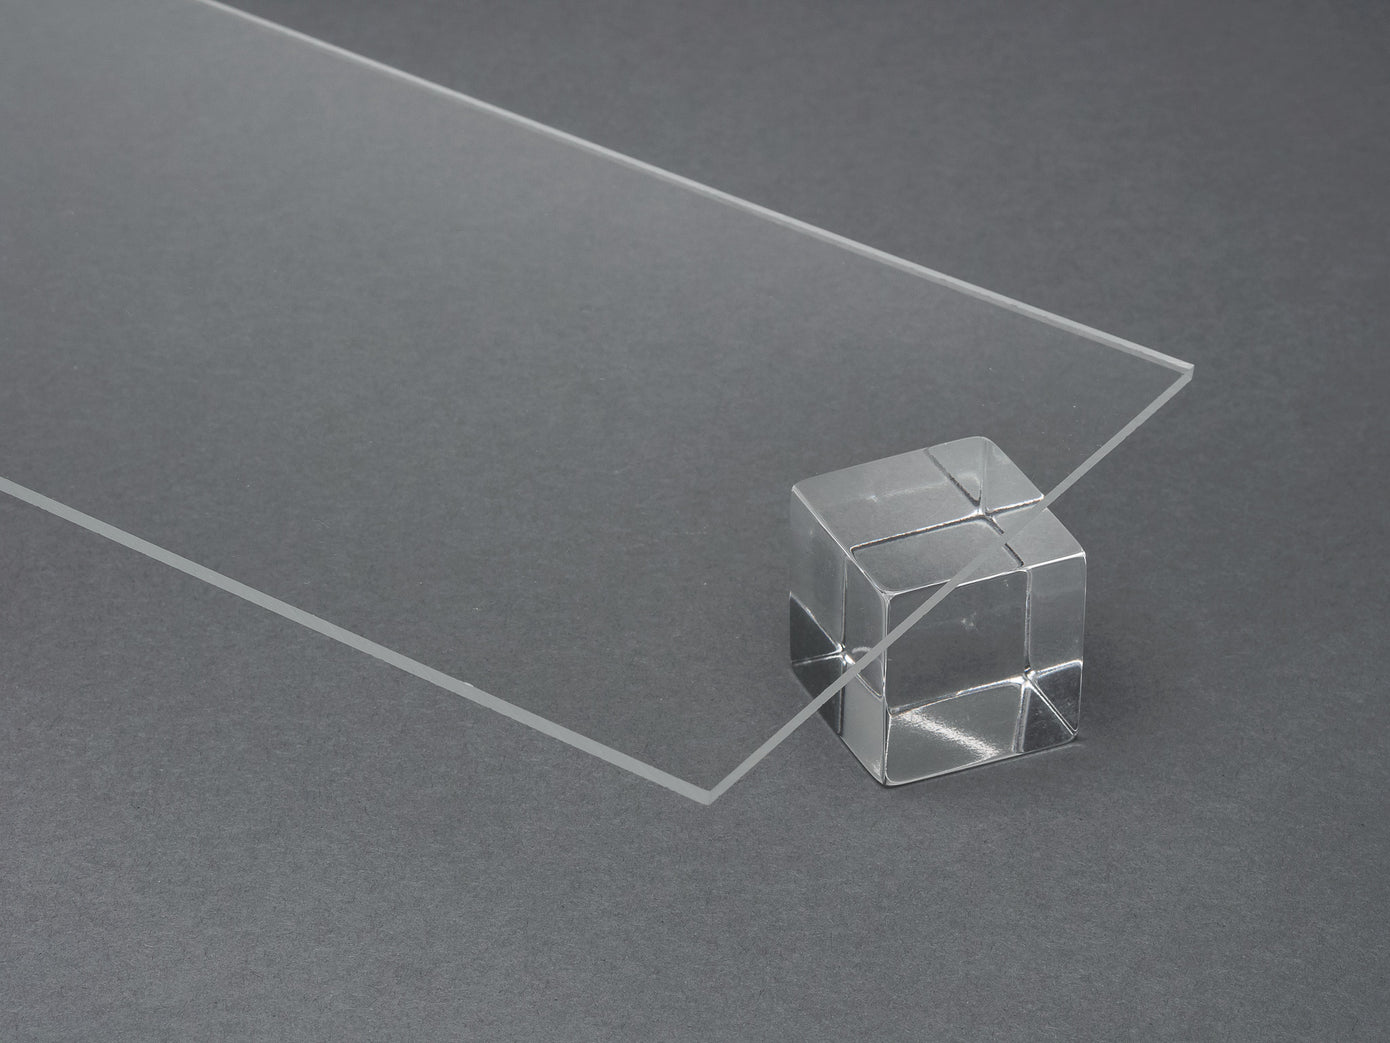 Plexi Nonagon Shape Acrylic Nonagon Cutouts, Clear Plexiglass Wall